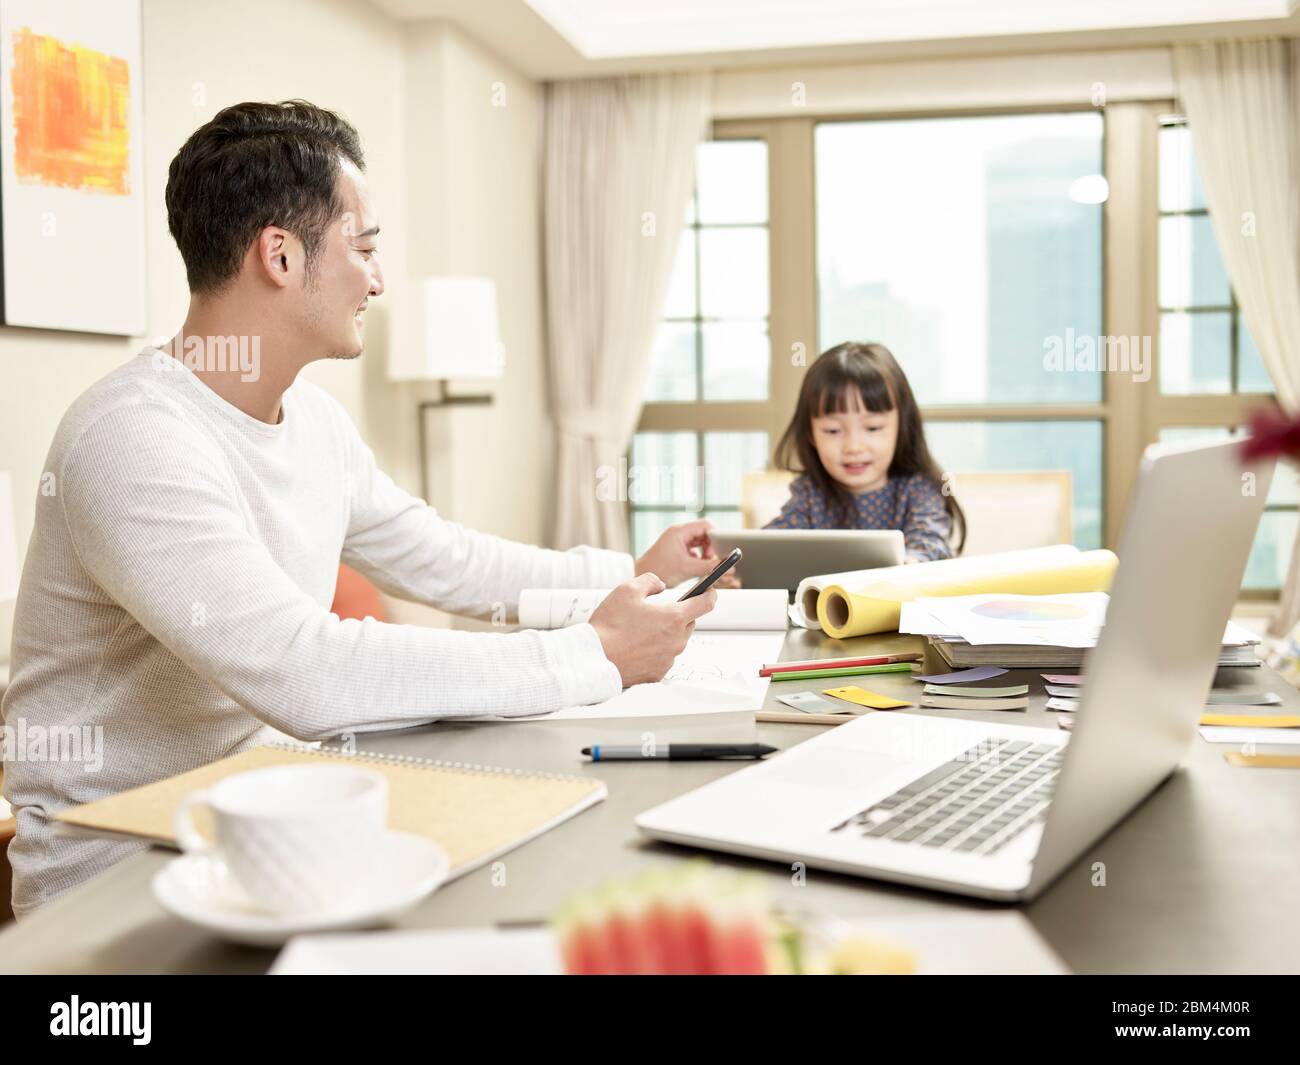 jeune homme d'affaires asiatique prenant soin de l'enfant tout en travaillant à domicile (œuvres d'art en arrière-plan modifiées numériquement) Banque D'Images